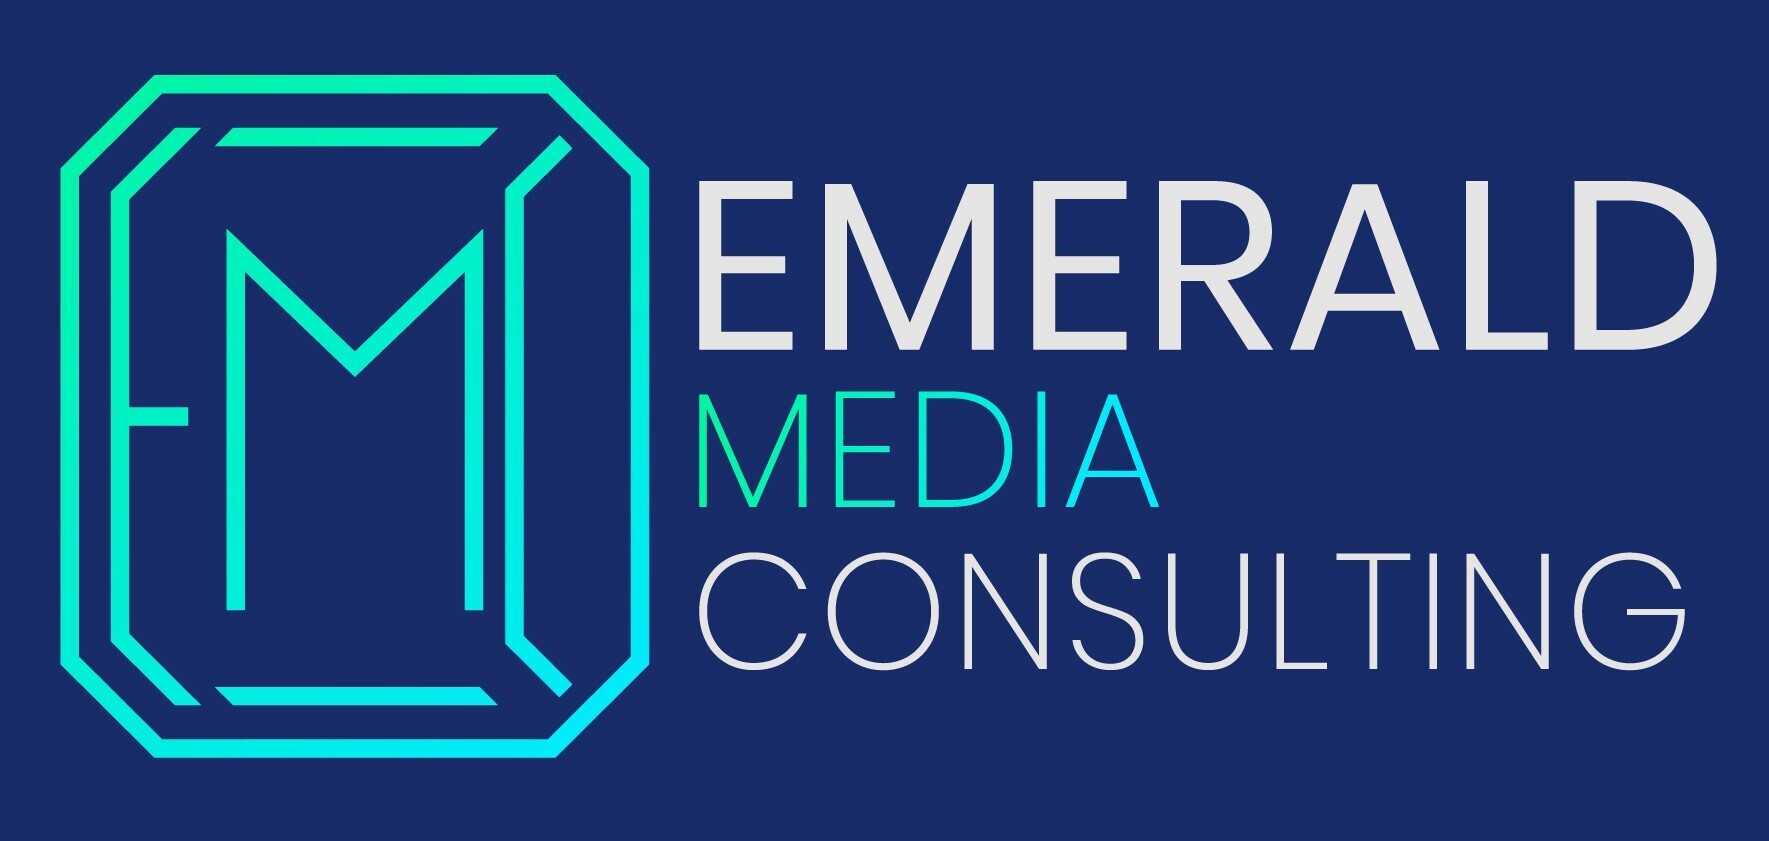 Emerald Media Consulting